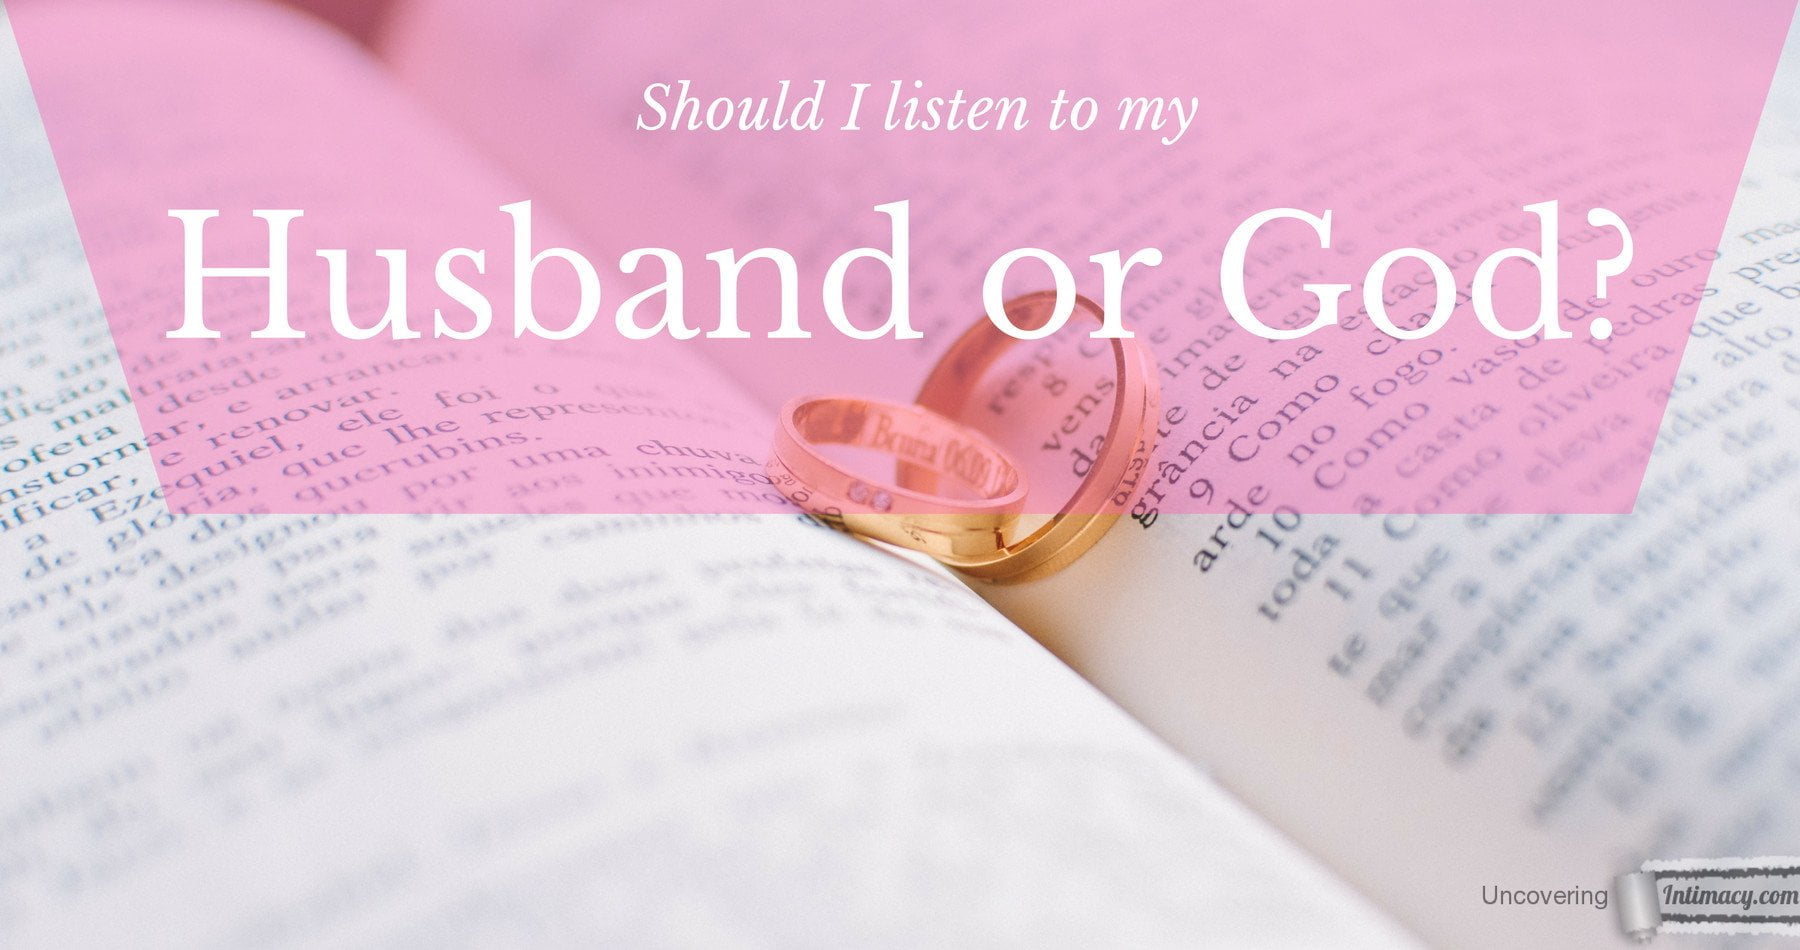 Should I listen to my husband or God? image